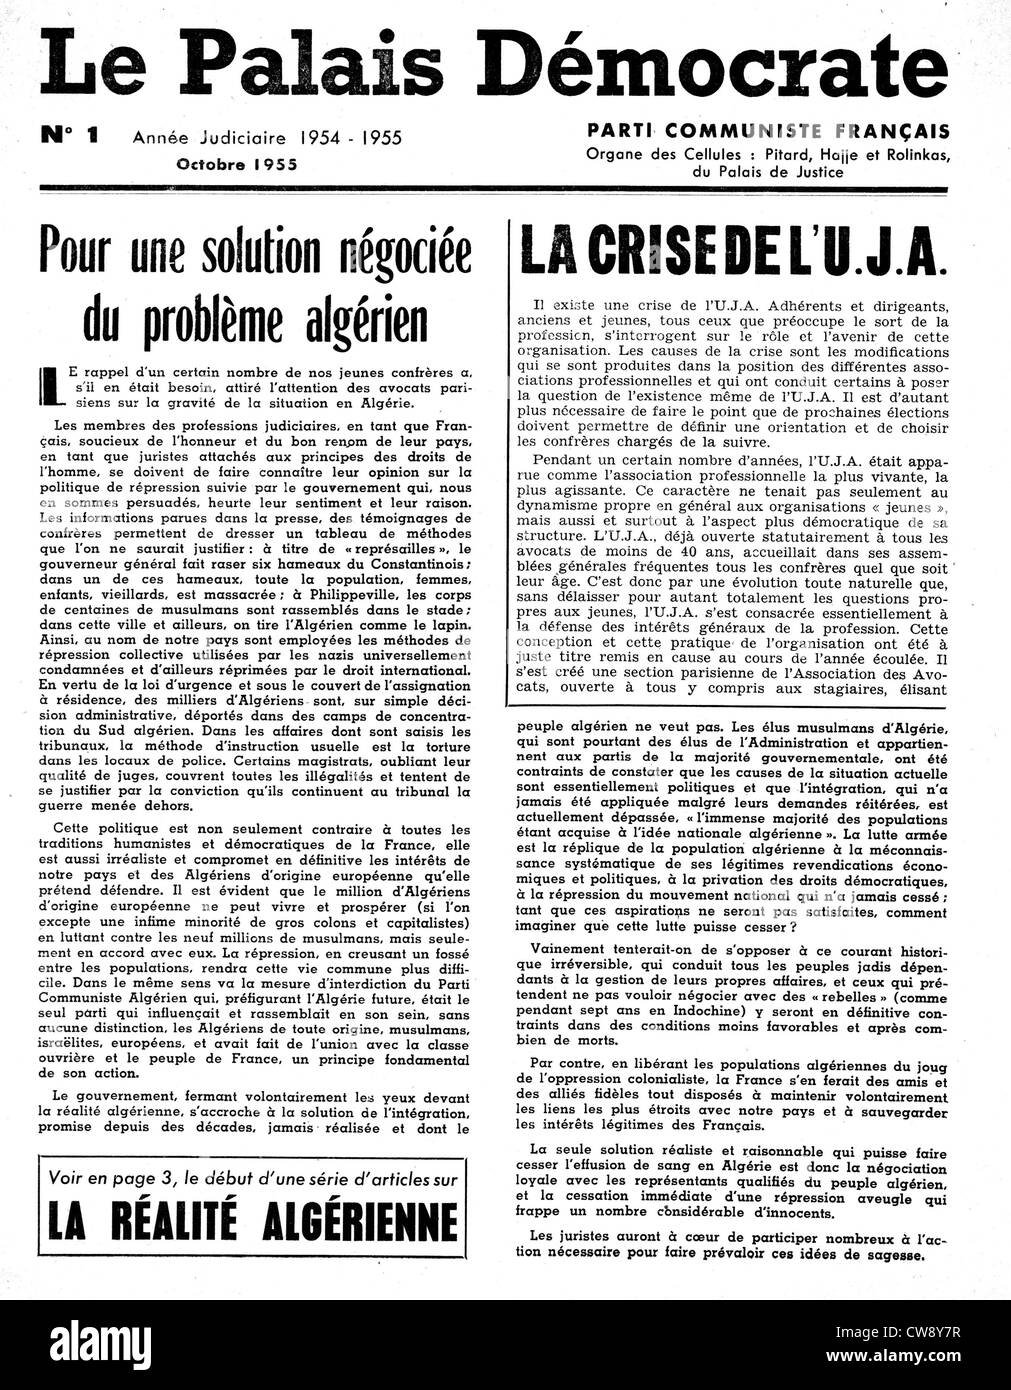 Magazin französische kommunistische Partei "Le Palais Démocrate" Nr. 1 Metastadt Ereignisse in Algerien Stockfoto